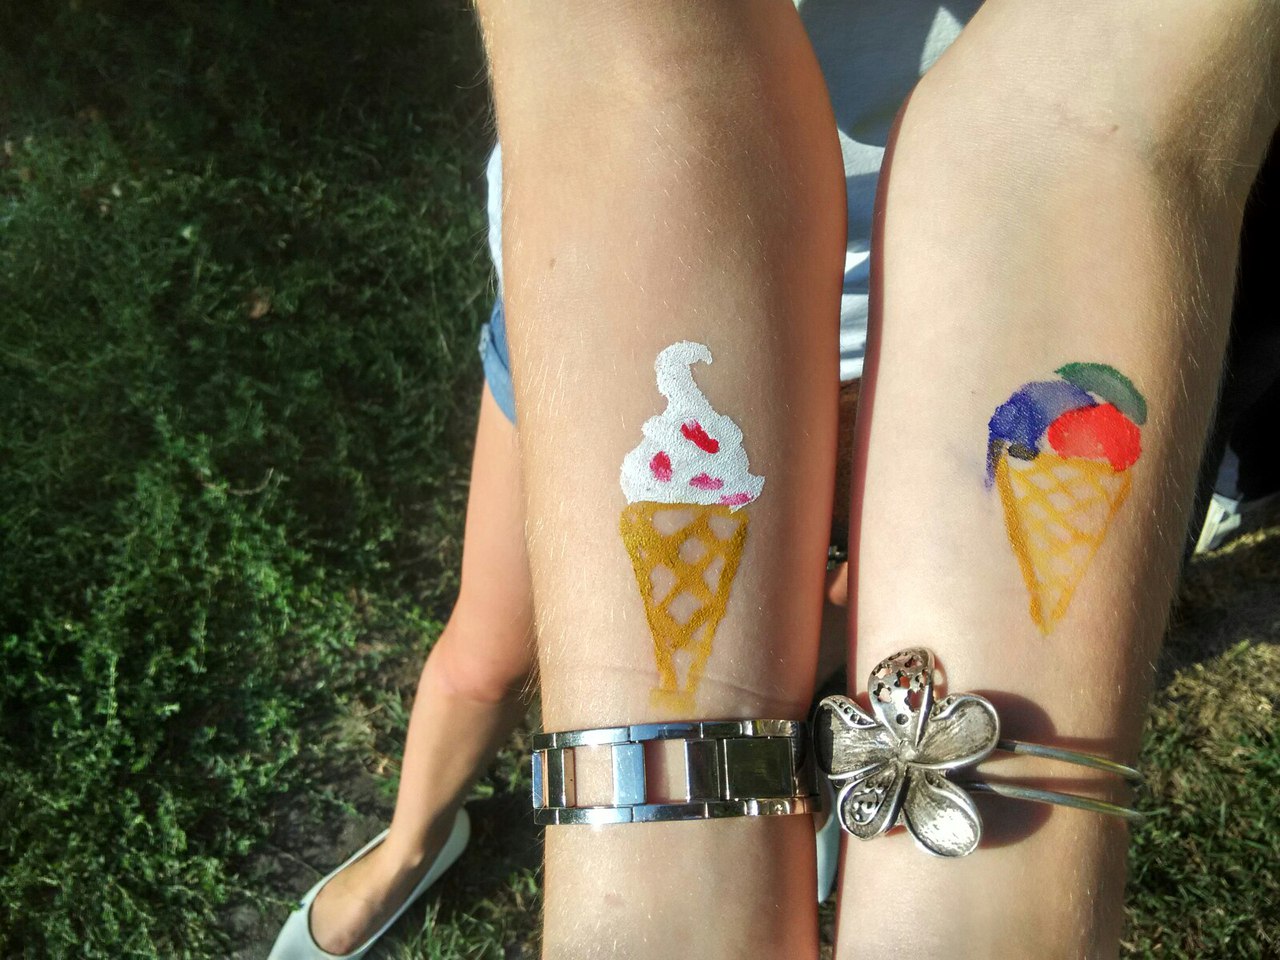 фестиваль мороженого